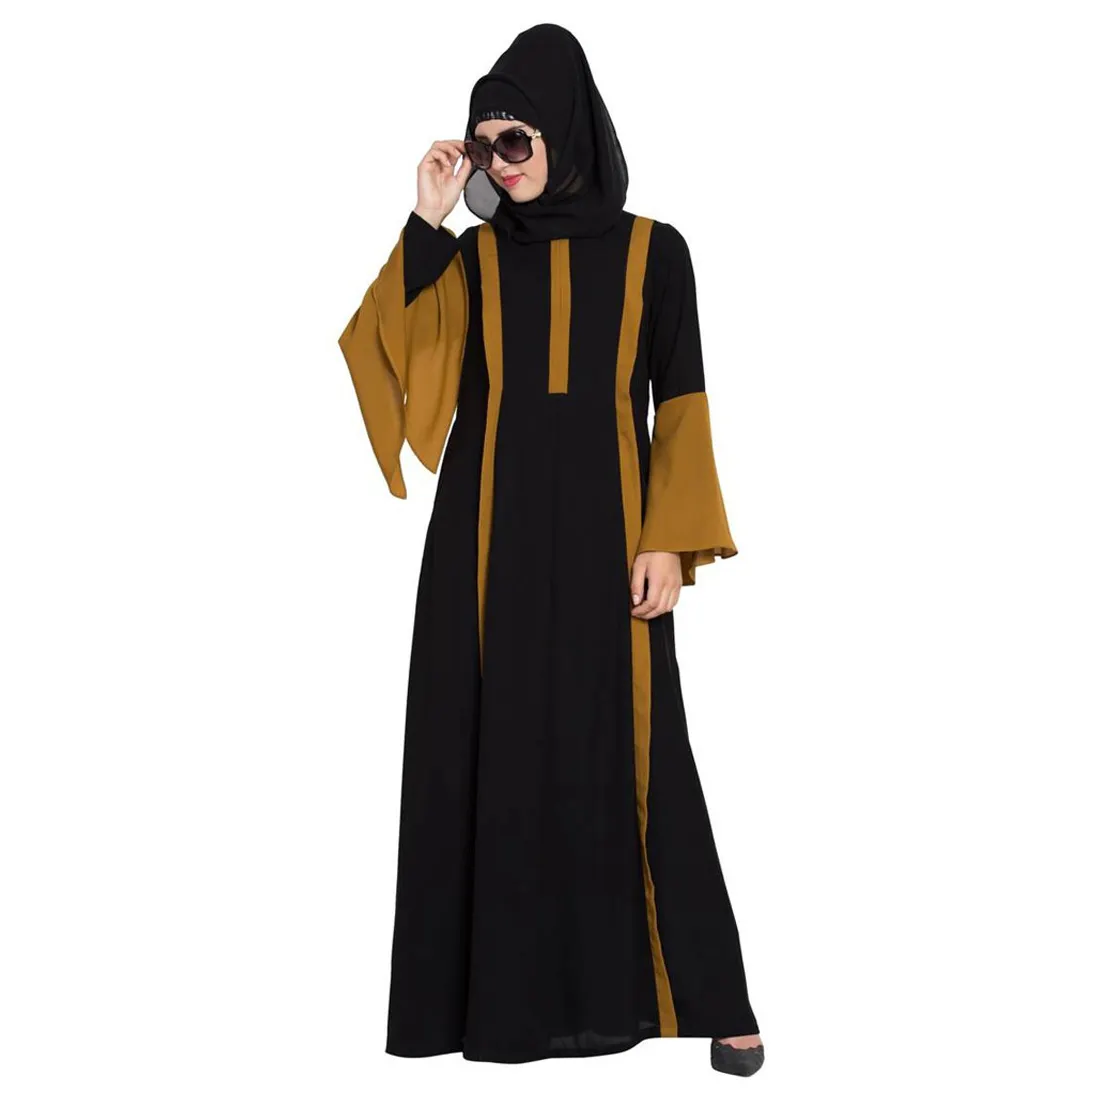 Trang Phục Hồi Giáo Phụ Nữ Ma-rốc Áo Choàng Abaya Dubai Thổ Nhĩ Kỳ Trang Phục Có Mũ Hồi Giáo